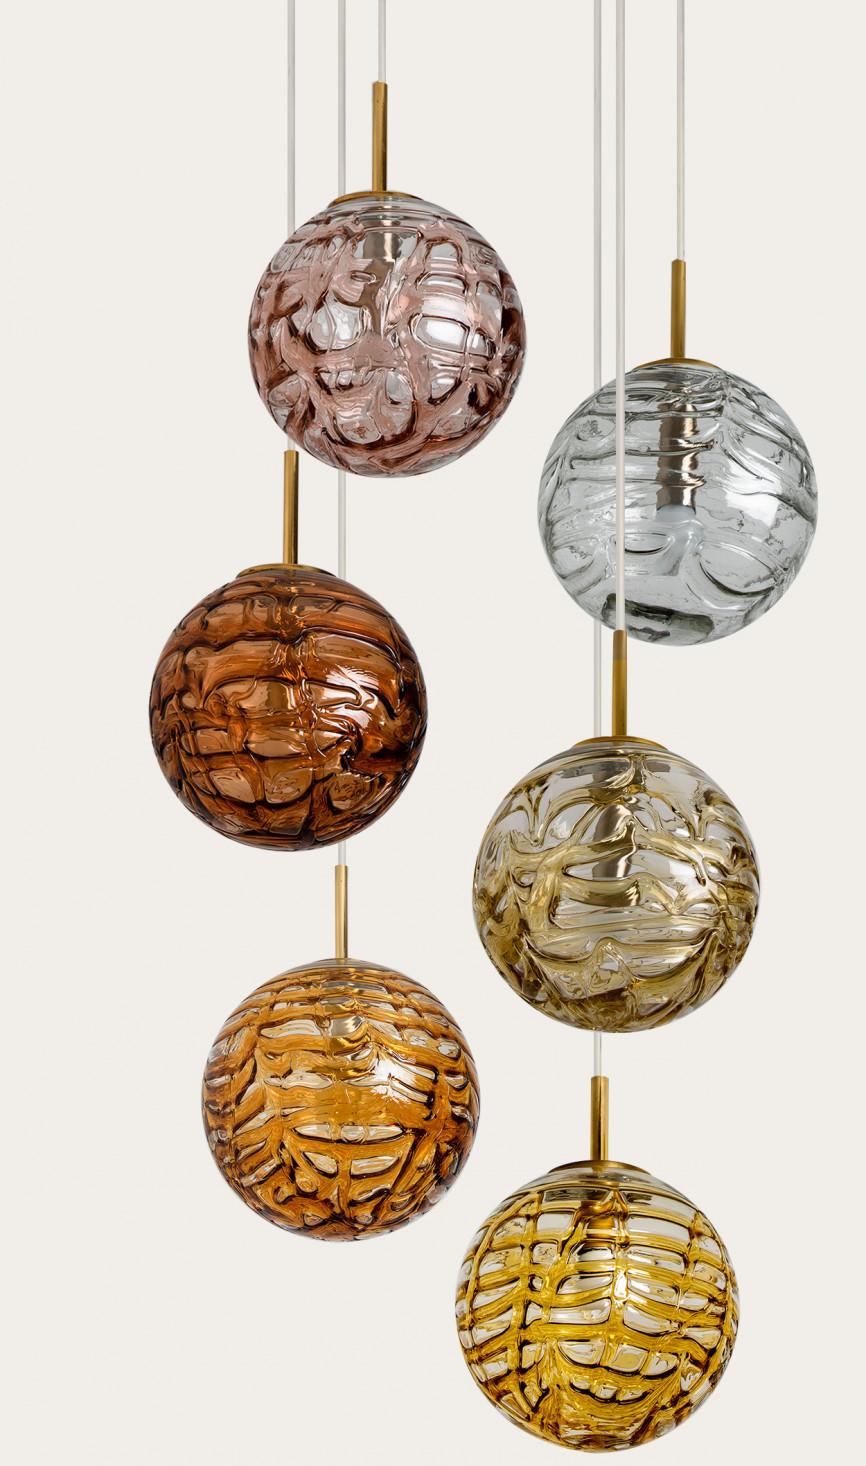 Magnifique suspension de plafond avec huit globes différents de Doria Leuchten, fabriquée dans les années 1960. Avec des globes en verre de Murano soufflé à la main de 11,8